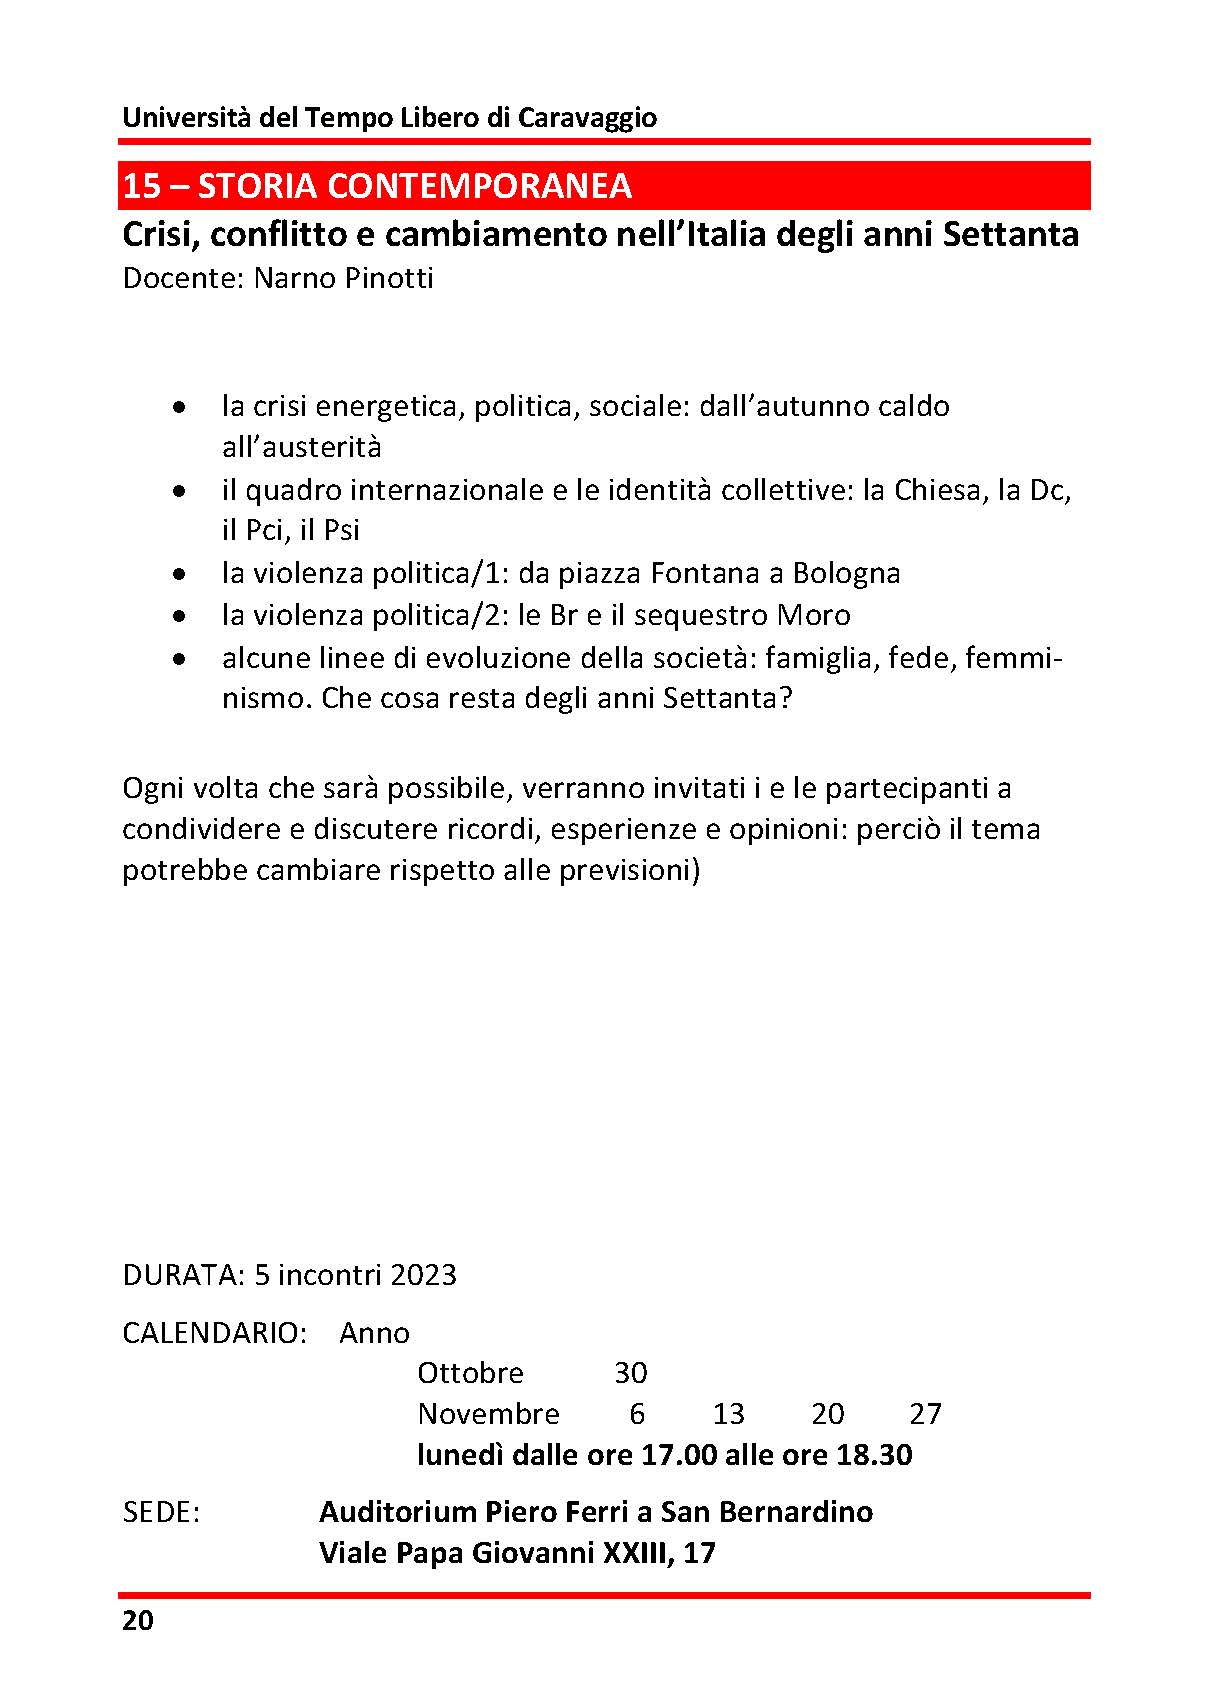 15 - STORIA CONTEMPORANEA - Crisi, conflitto e cambiamento nell’Italia degli anni Settanta